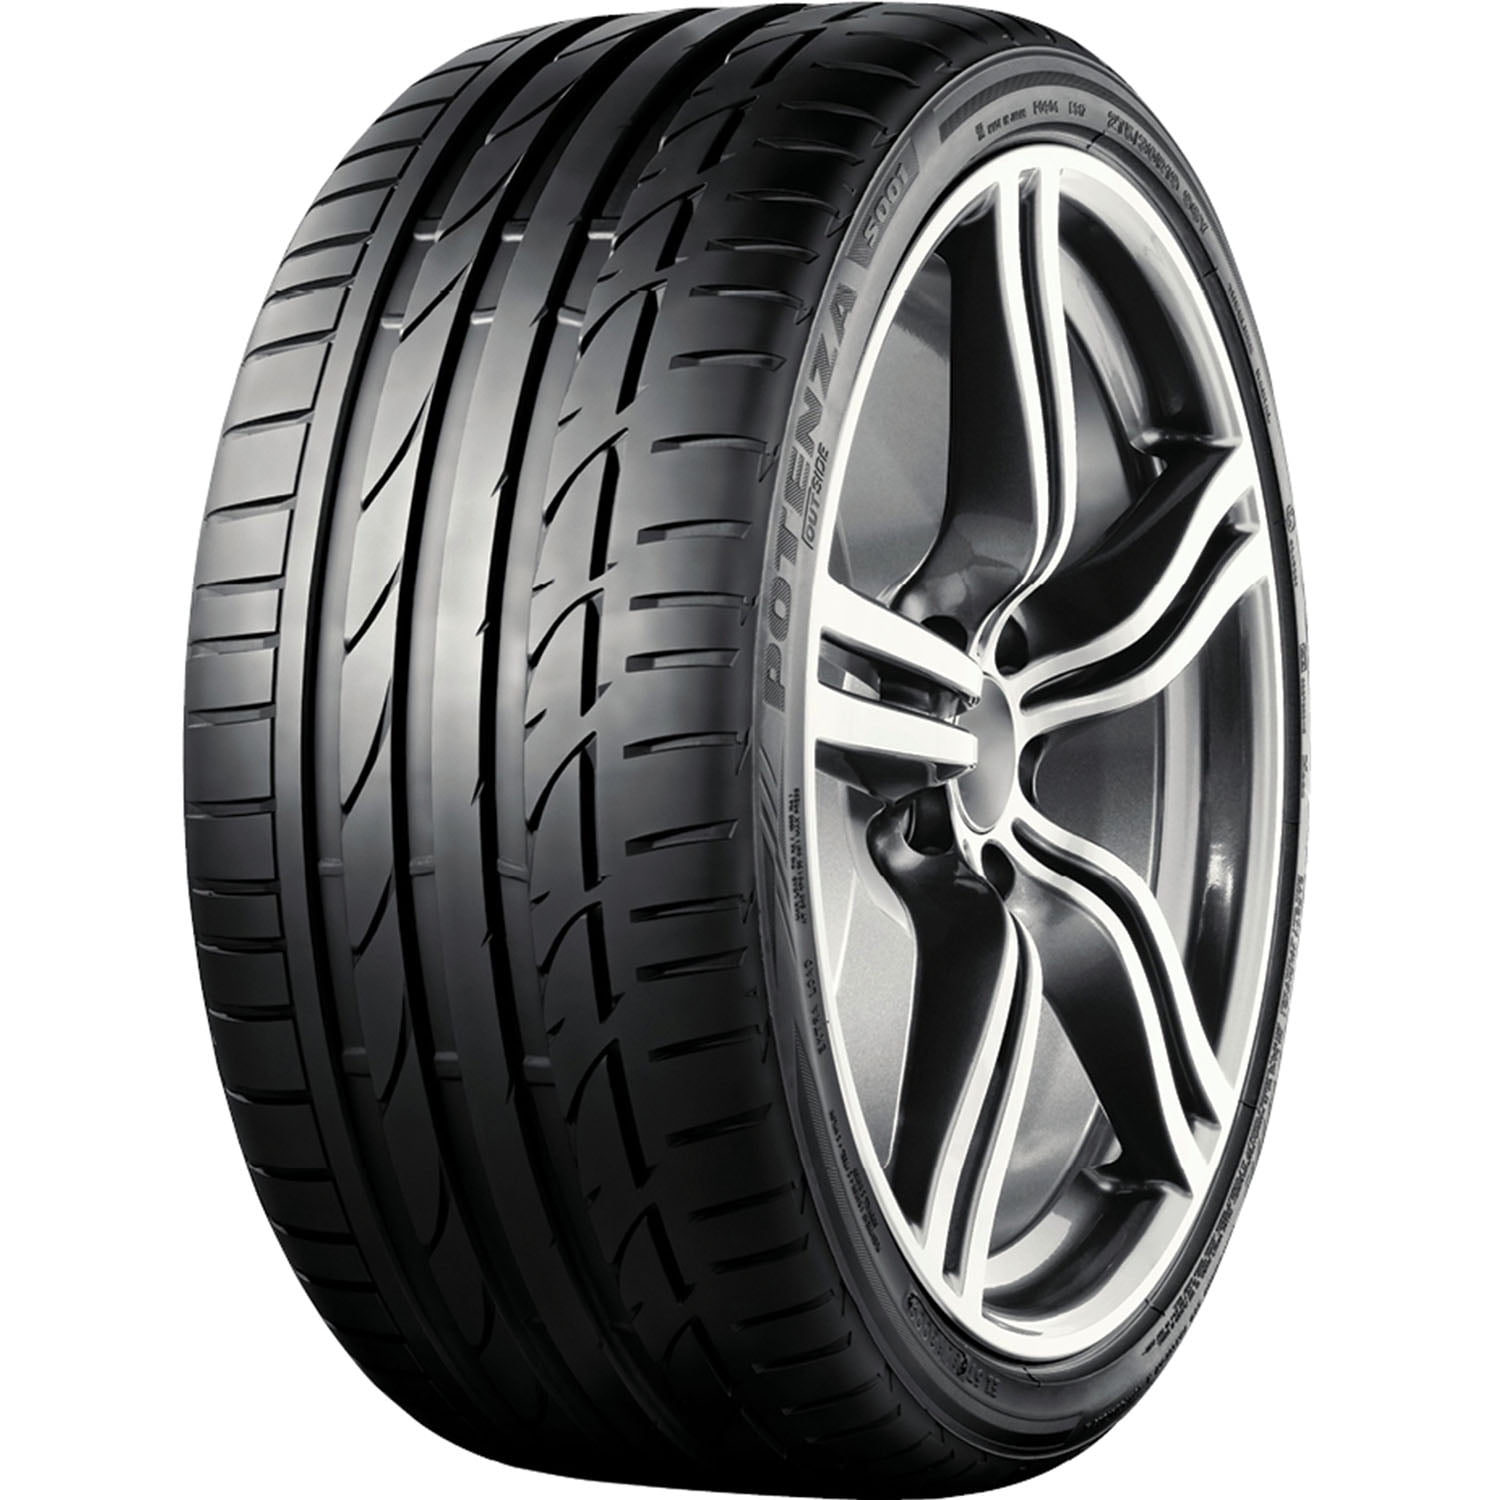 Bridgestone Potenza S001 RFT Summer 225/40R19 93Y XL Passenger Tire Fits:  2015-23 Mercedes-Benz C300 4Matic, 2017-23 BMW 330i Base